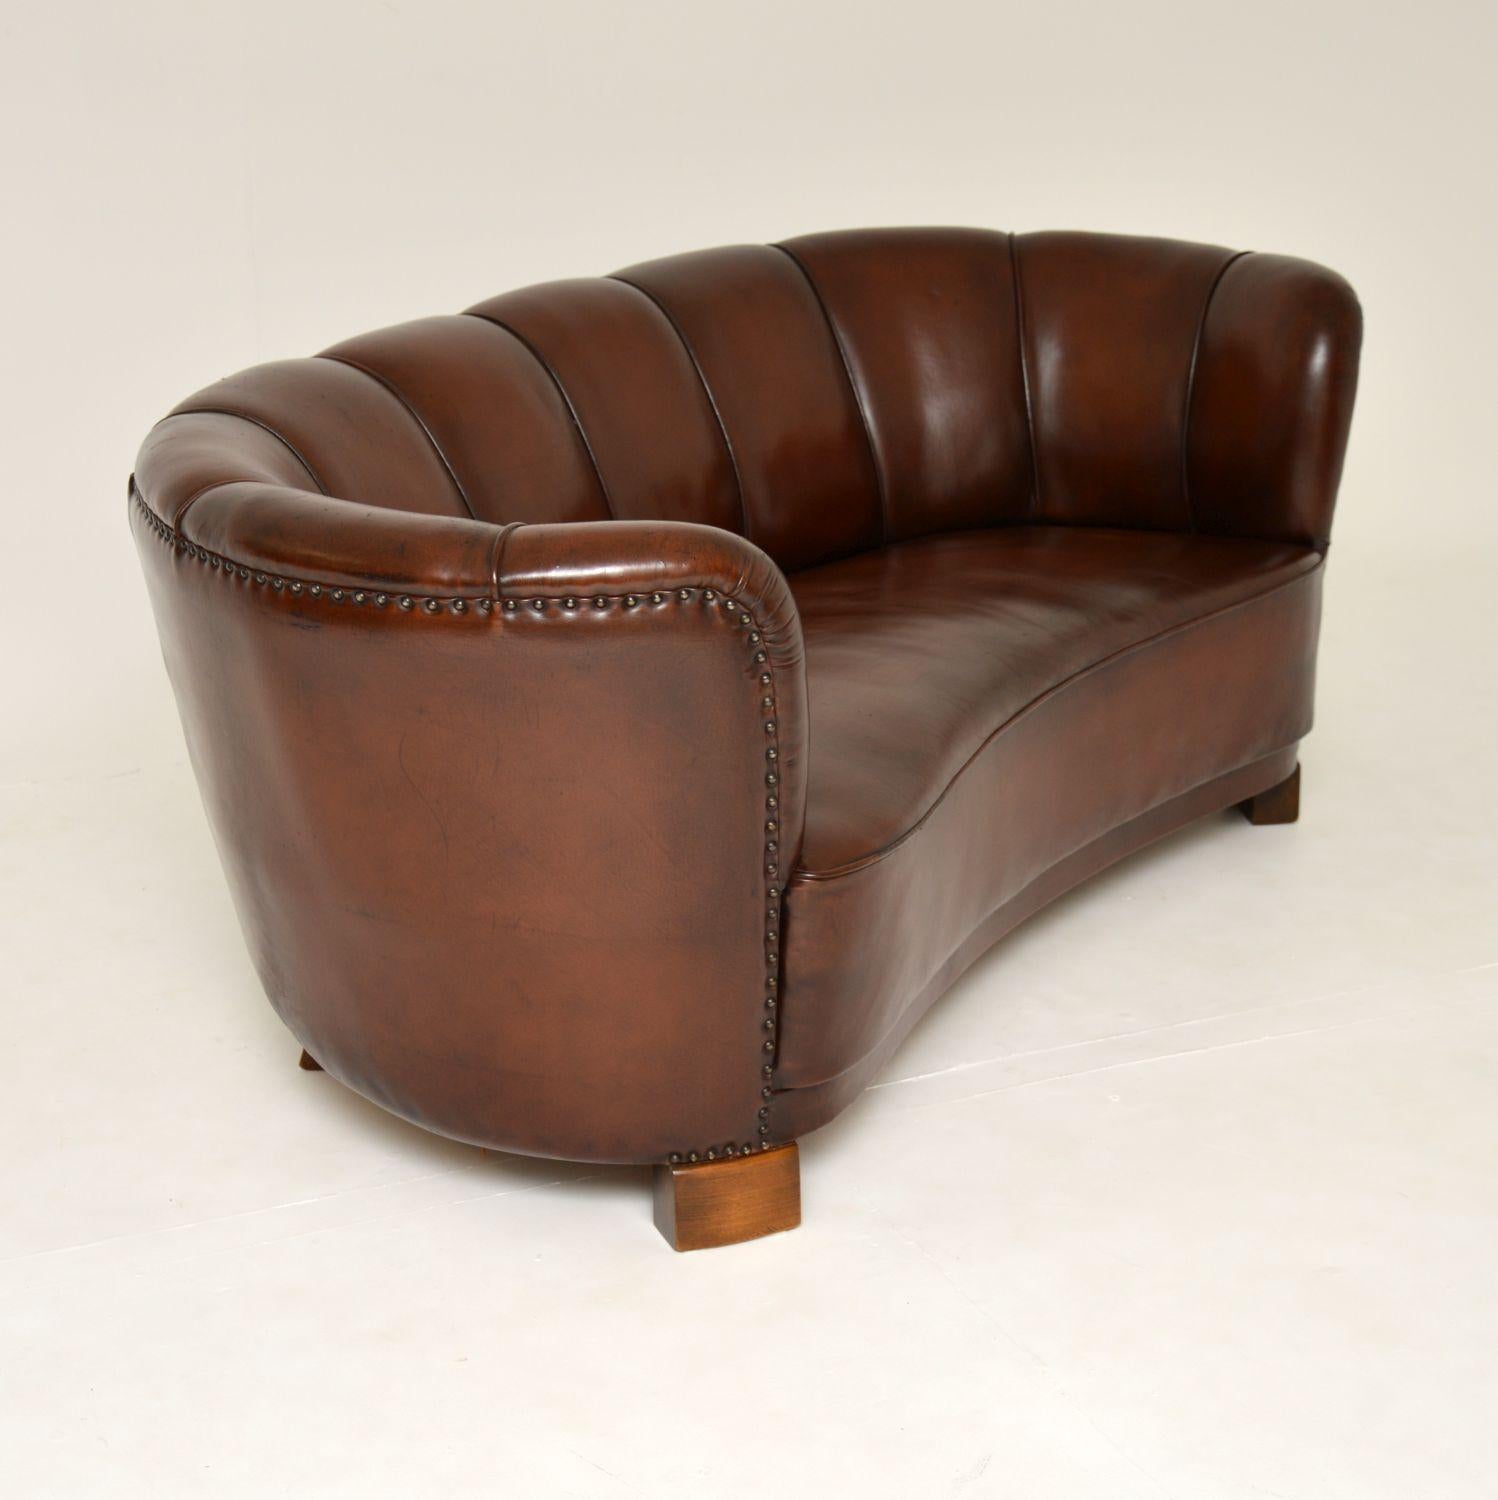 1940's Danish Leather Curved Banana Sofa 1